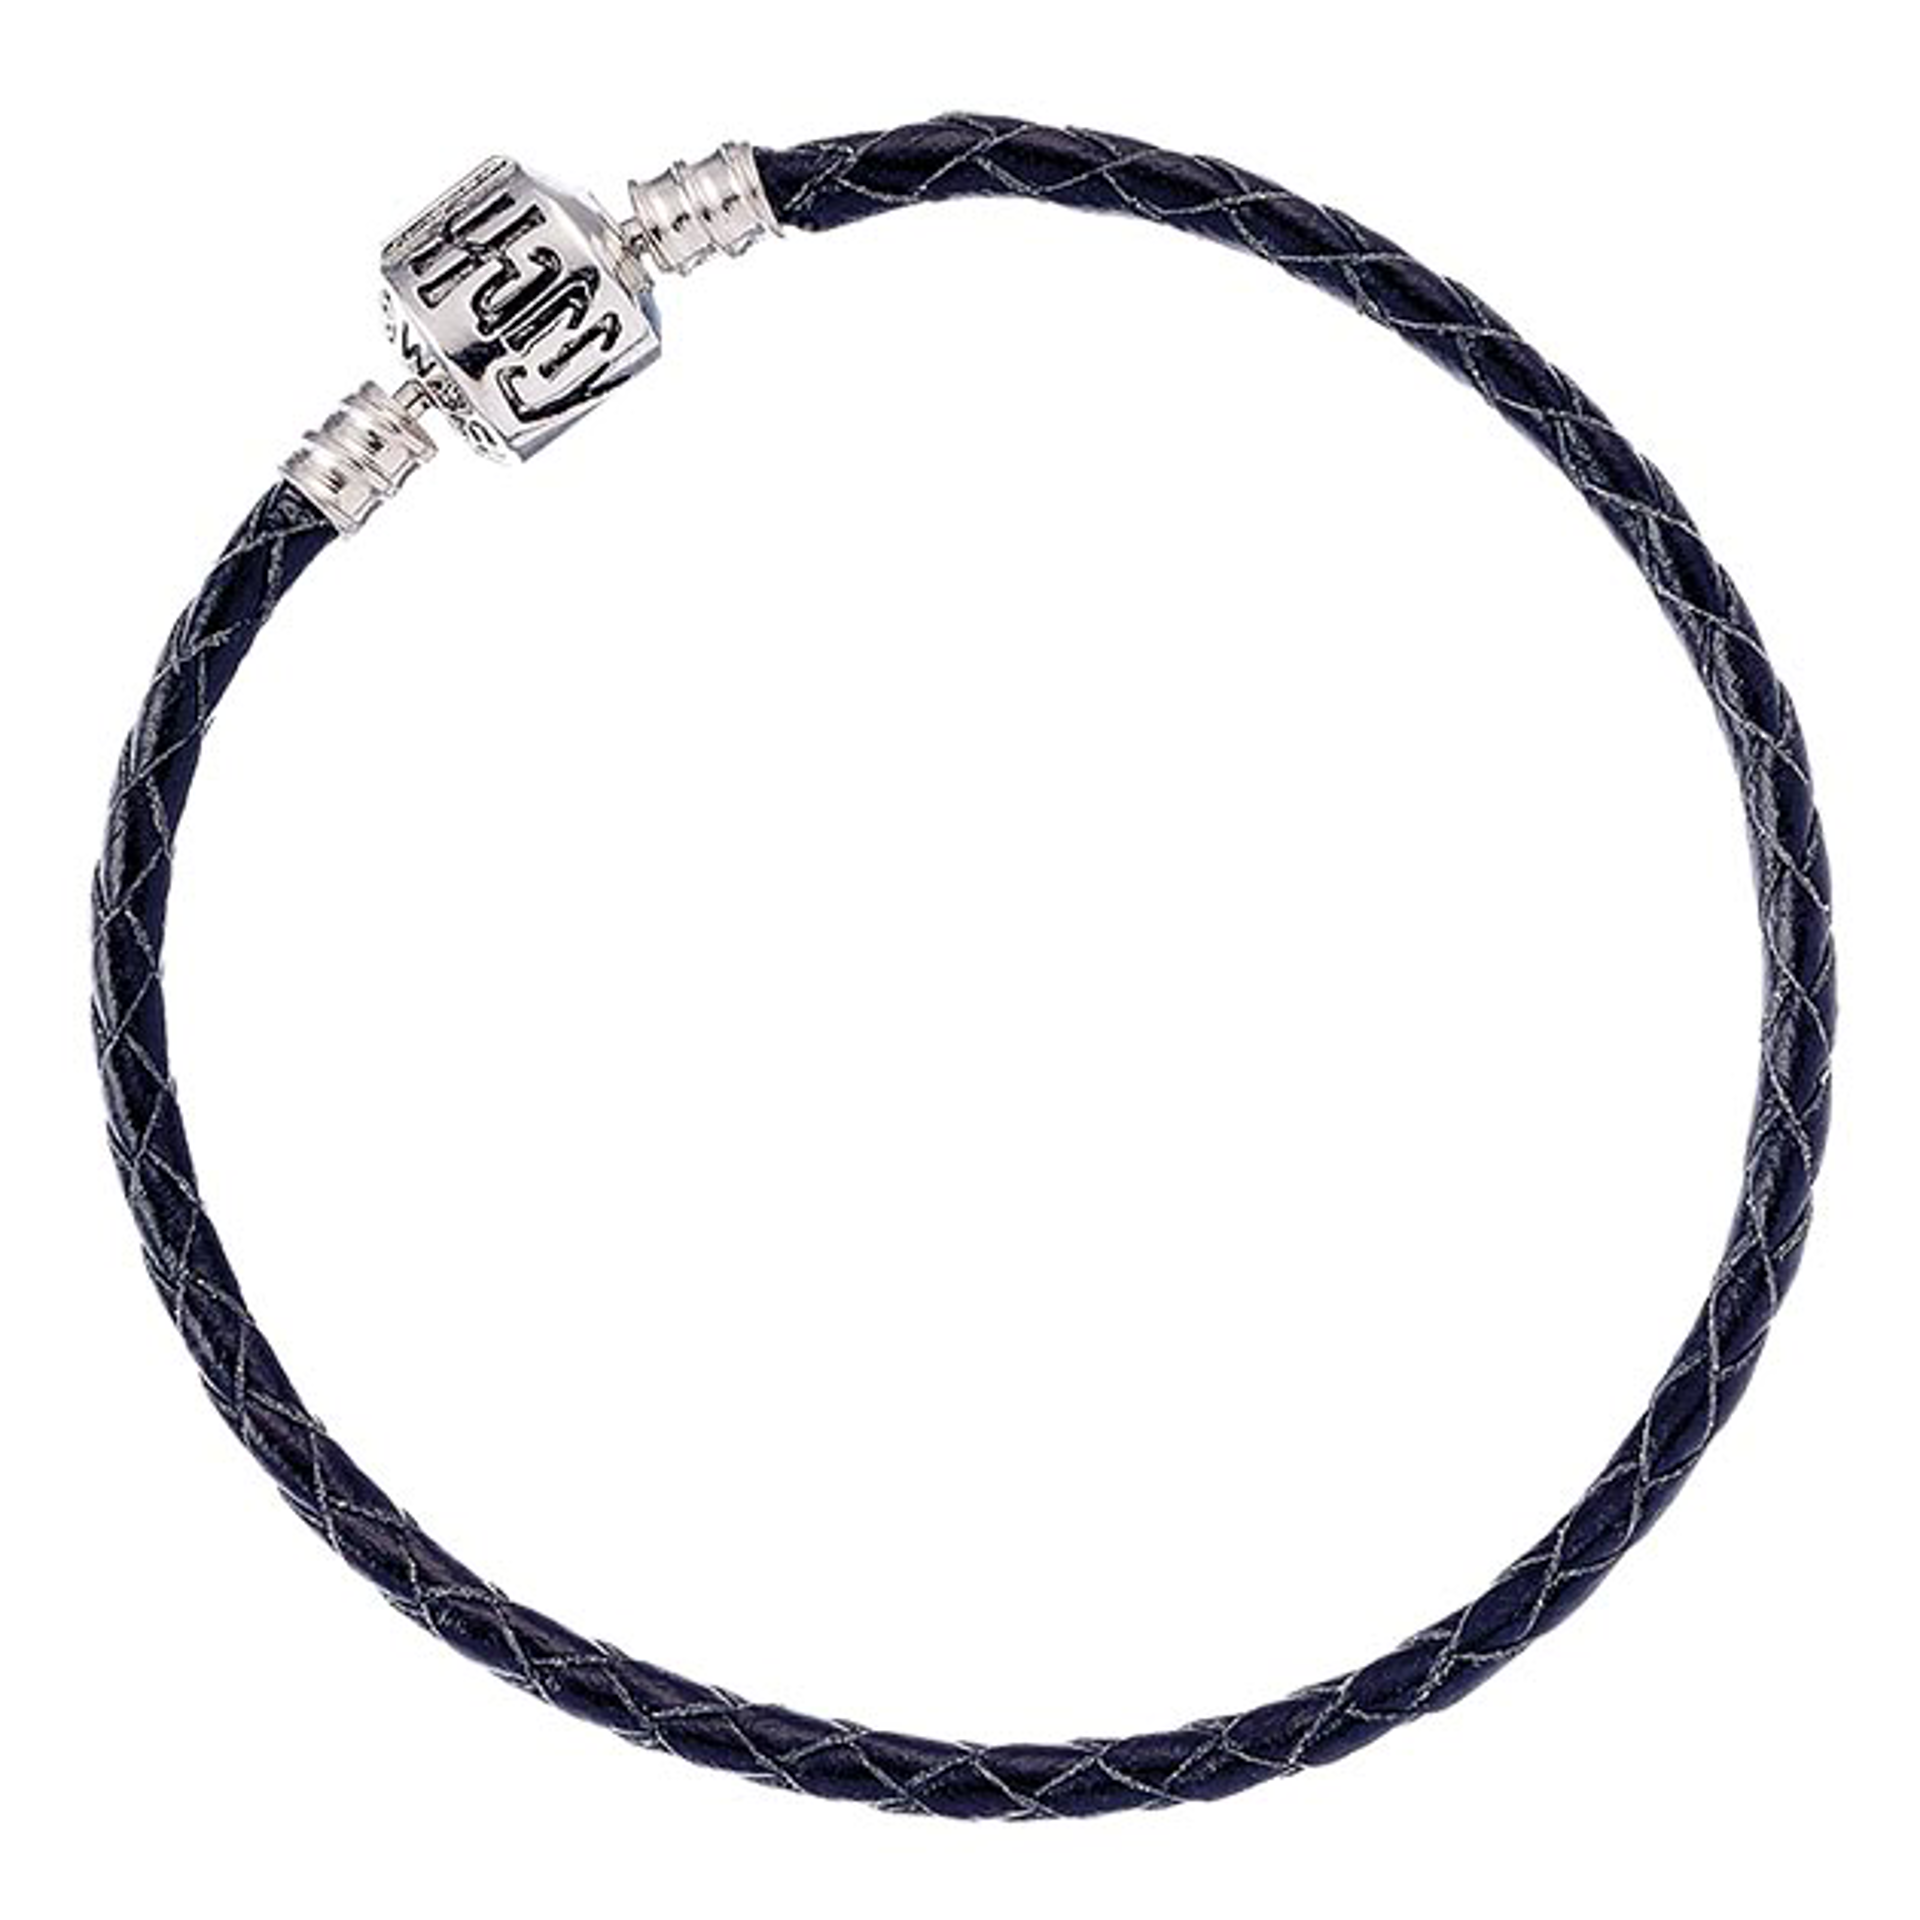 Harry Potter - Bracelet à breloques Charms en cuir noir 19cm